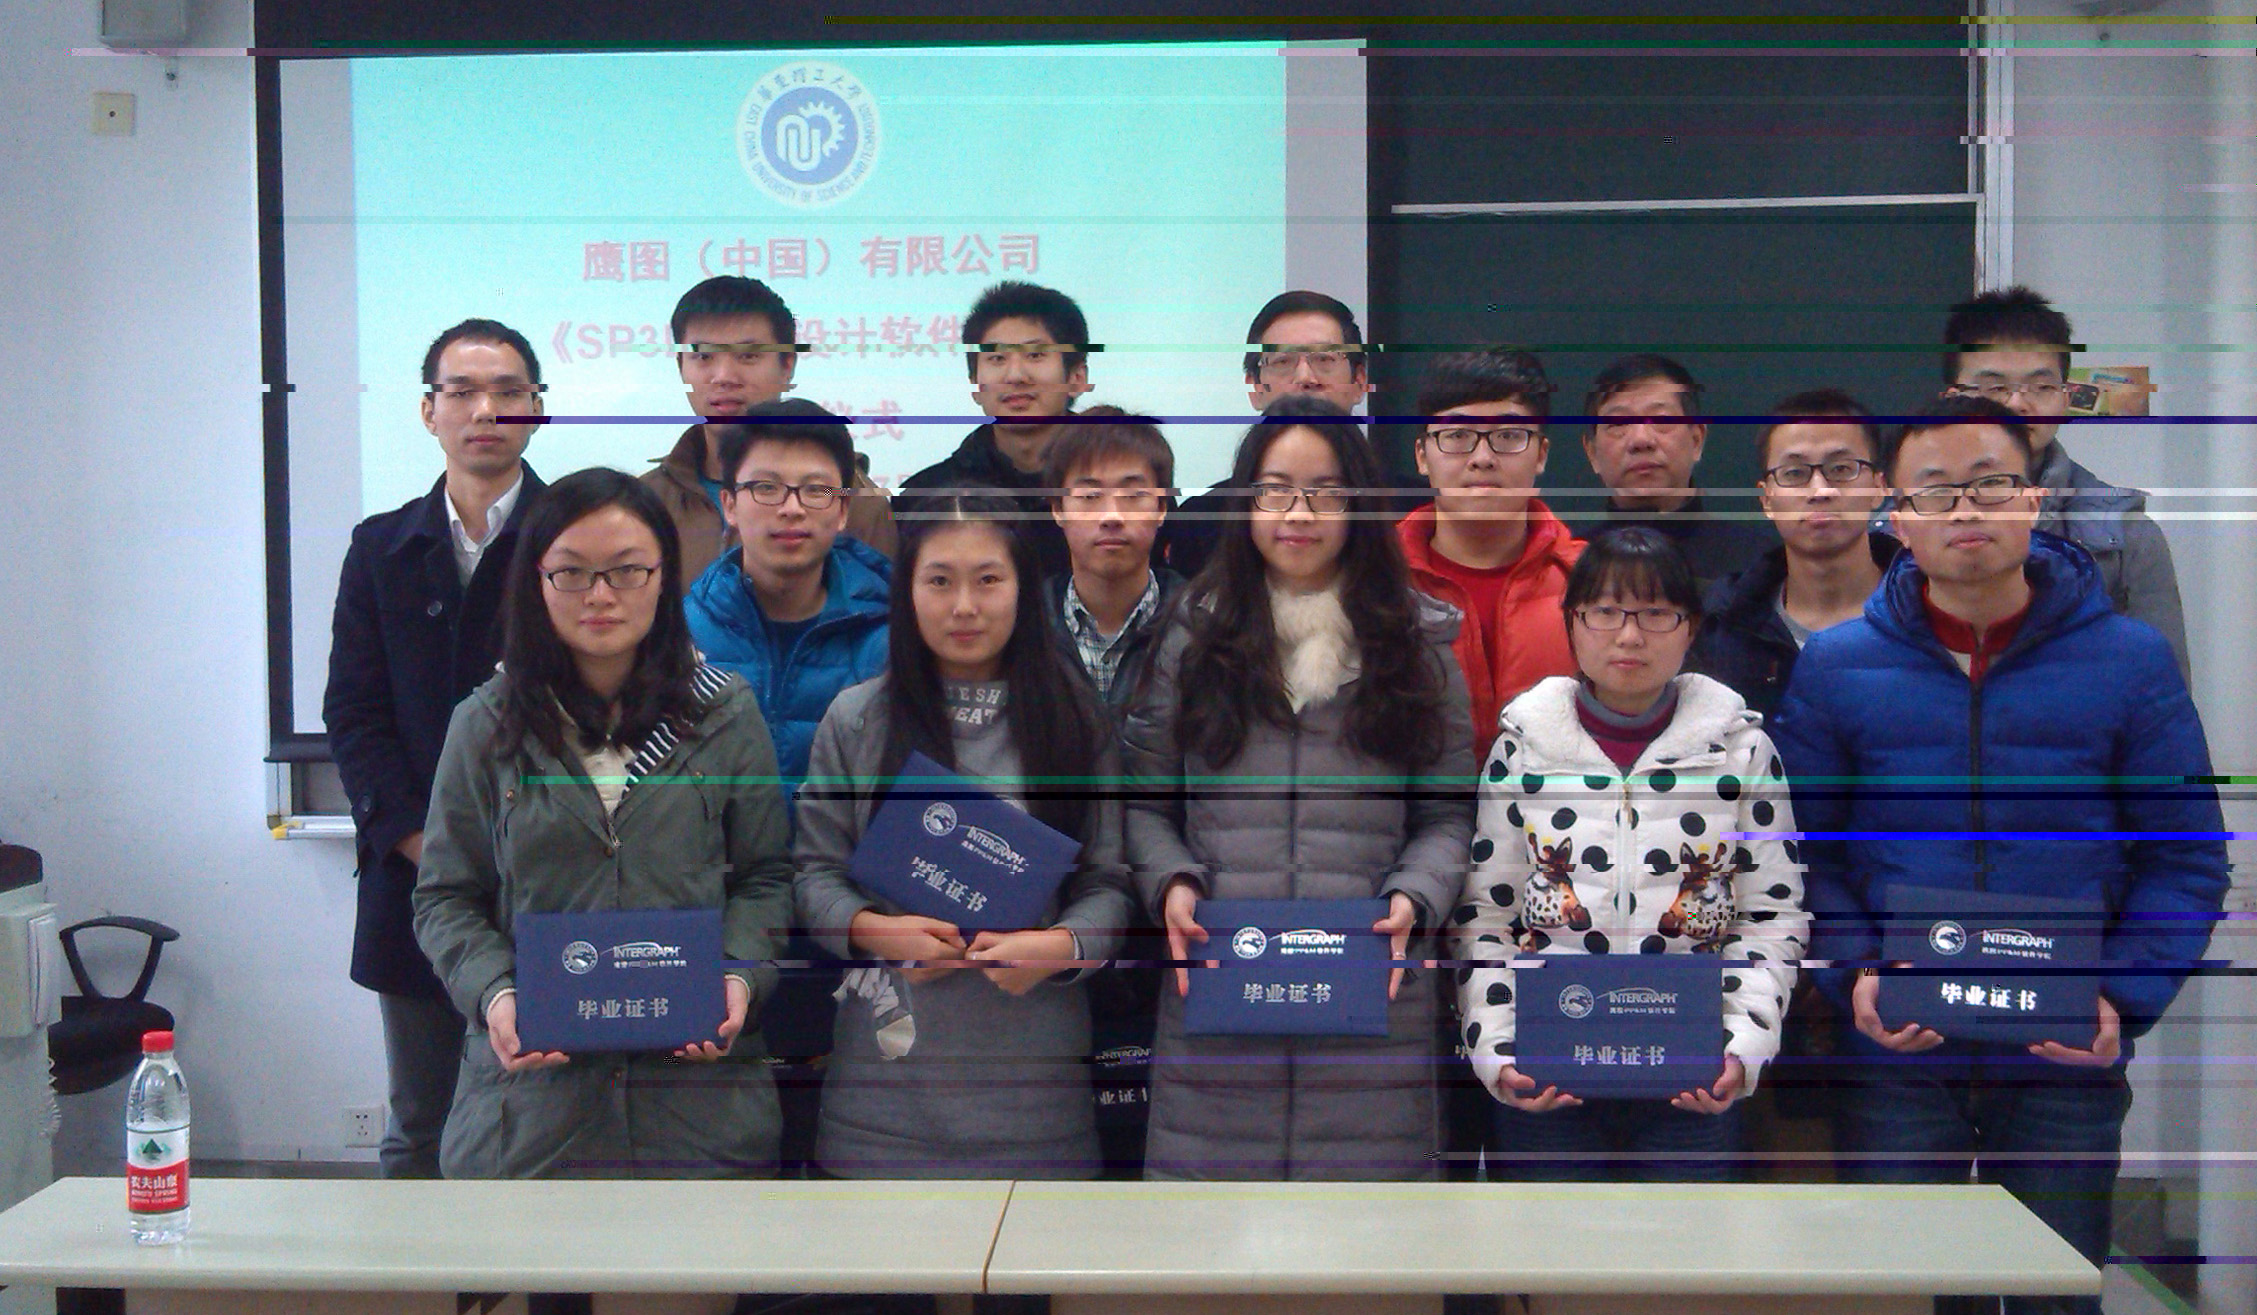 SP3D軟件課程優秀學生獲鷹圖公司證書